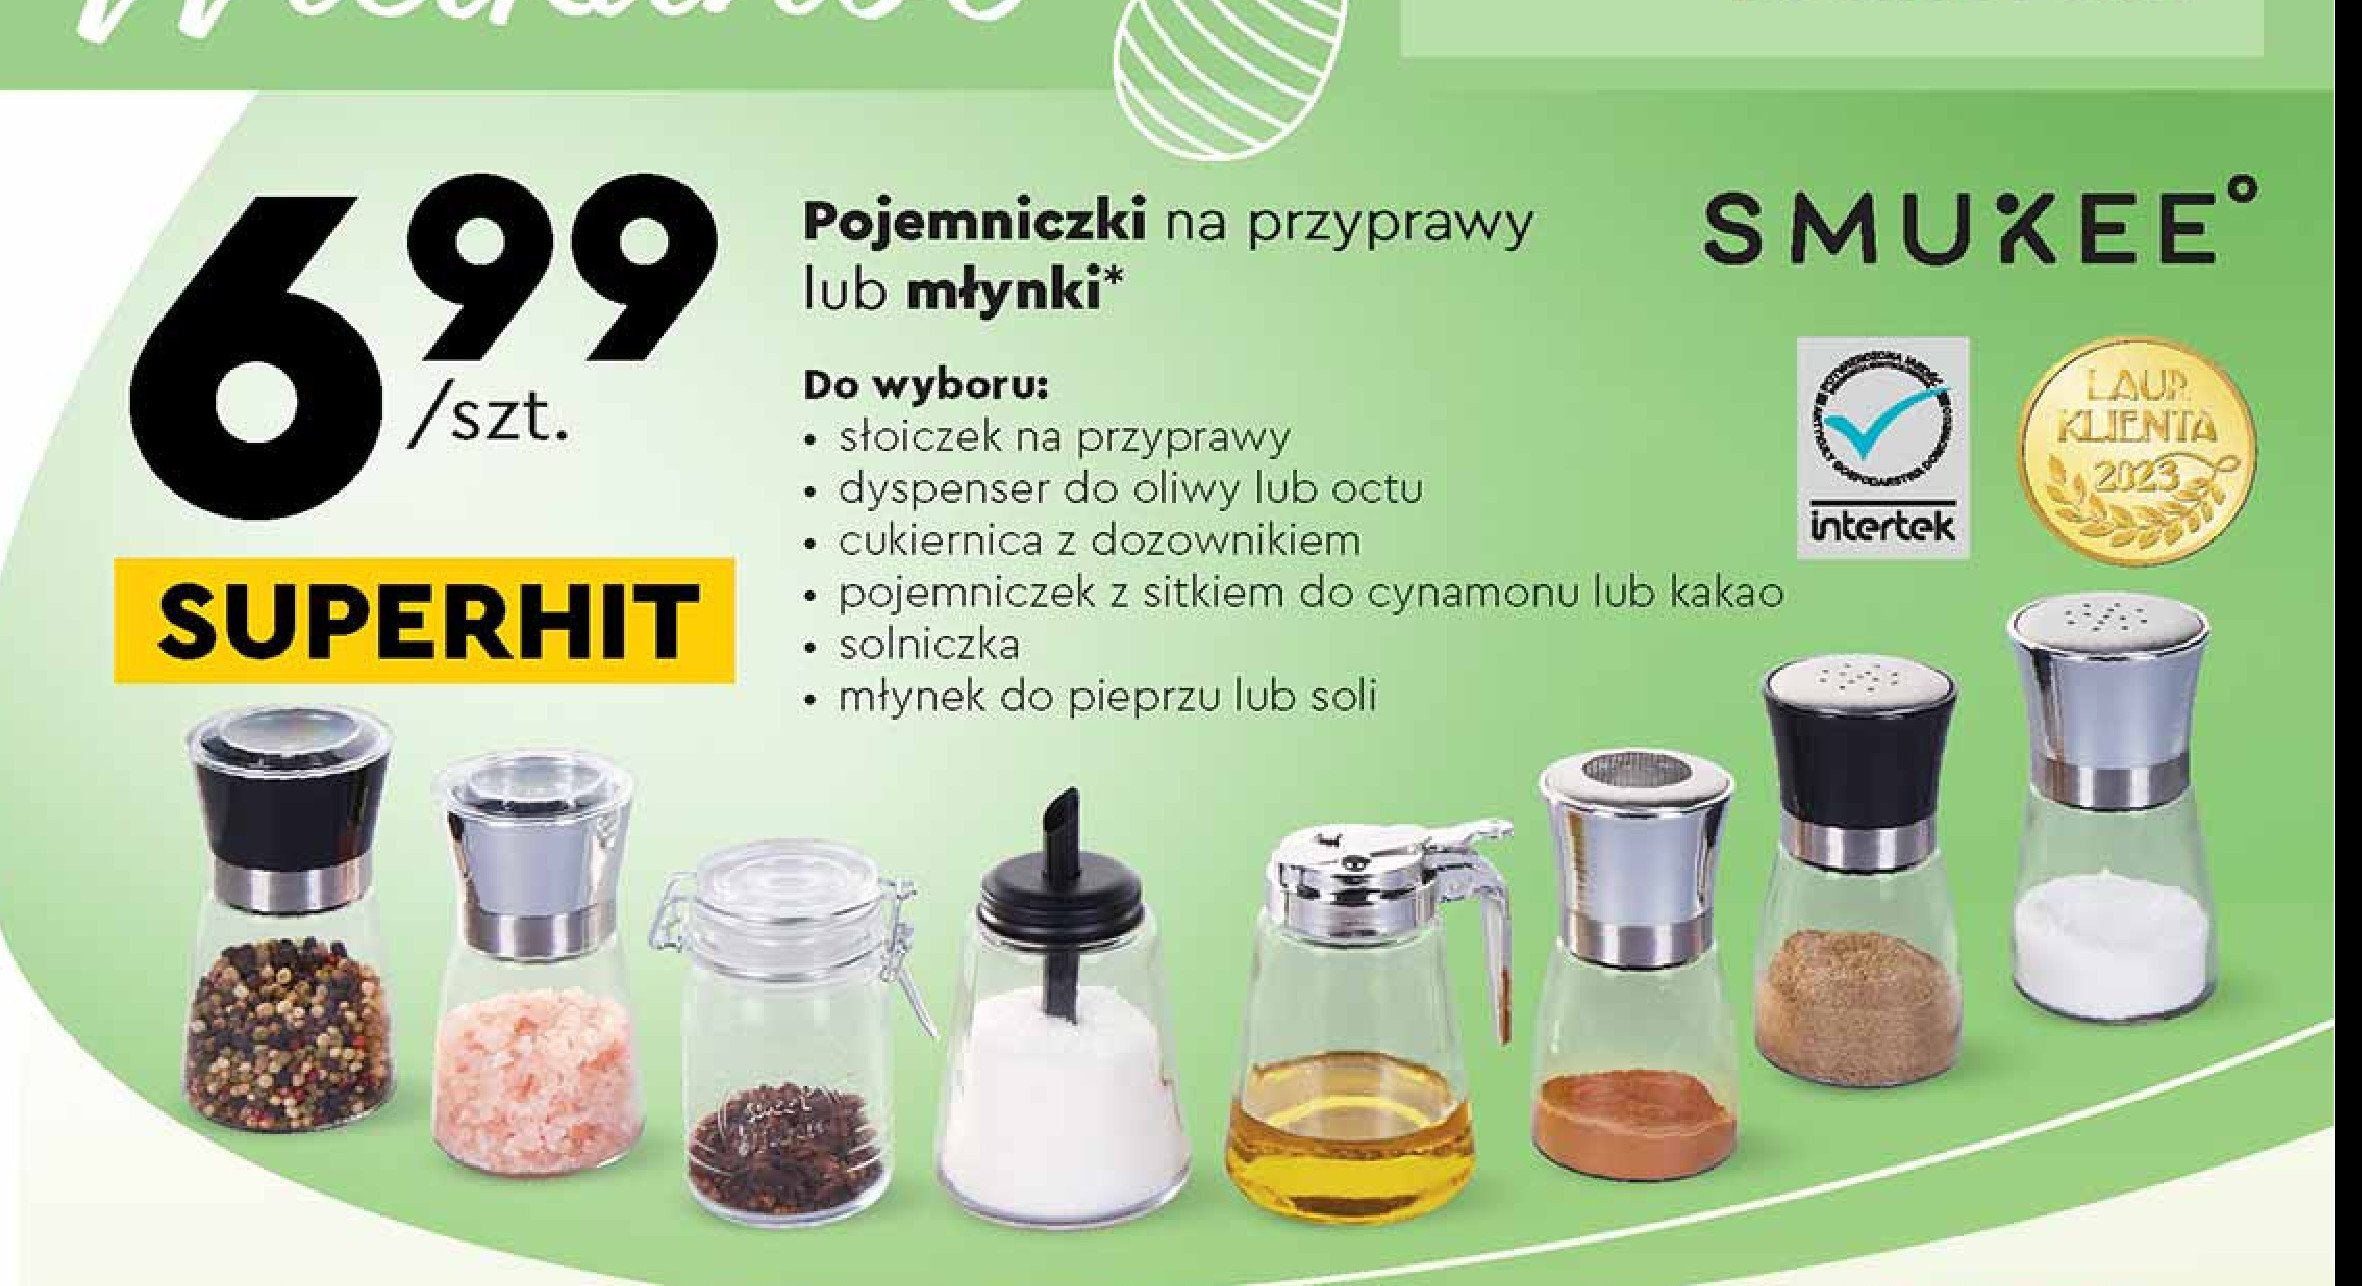 Solniczka Smukee kitchen promocja w Biedronka